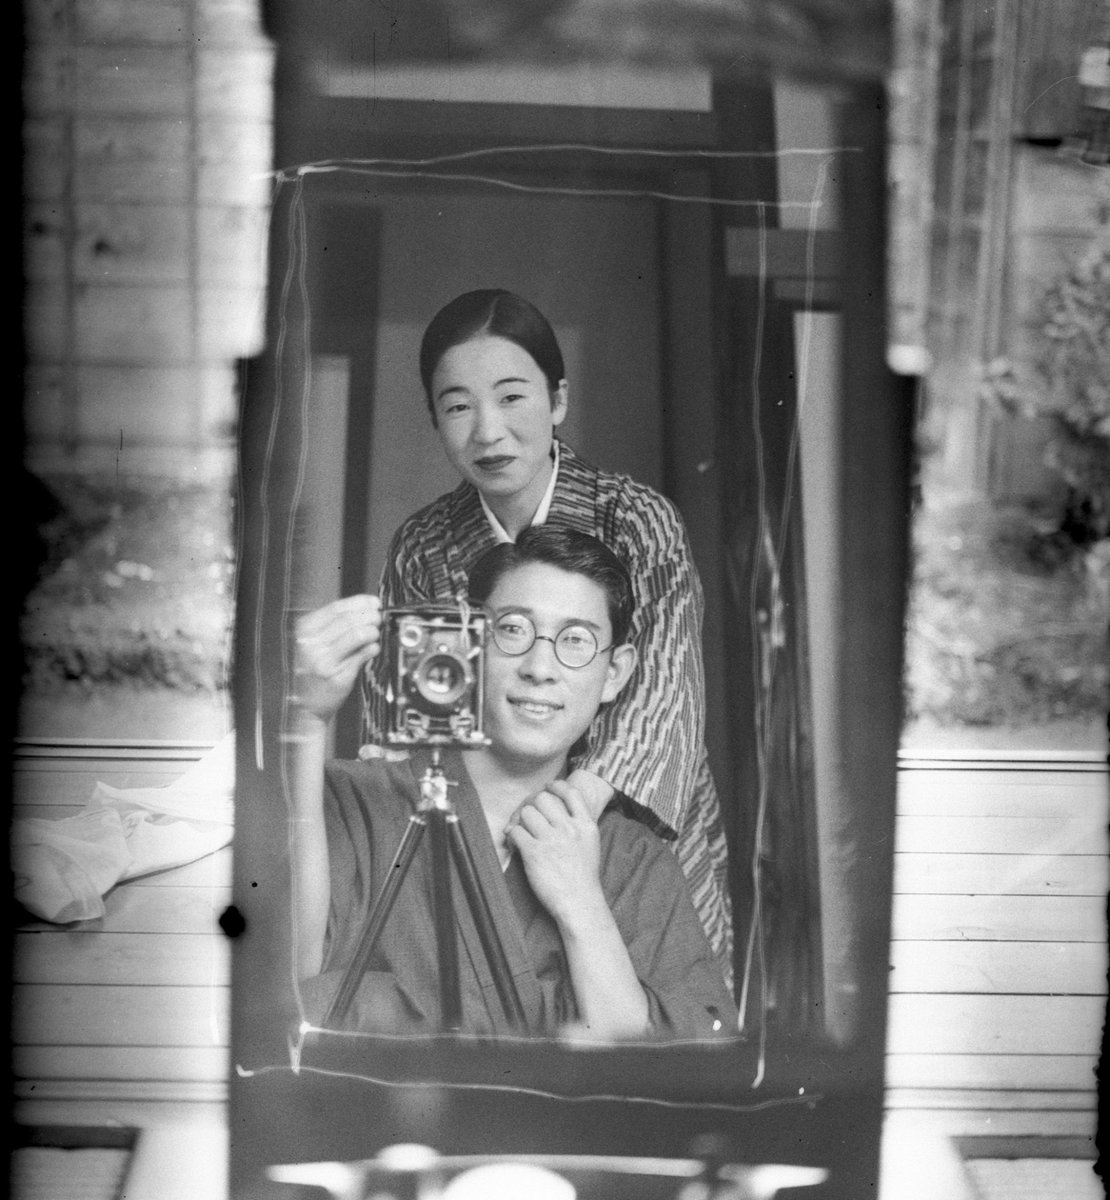 Oguchi T 小口 高 かなり前に日本人のカップルが鏡を使って自撮りを試みた写真 T Co Kkrb2p2xt8 日本の古い写真を紹介しているフェースブックのアカウントが昨年10月に投稿したもの 撮影の工夫や二人の姿が印象的で ここ数日 海外を含めて急に